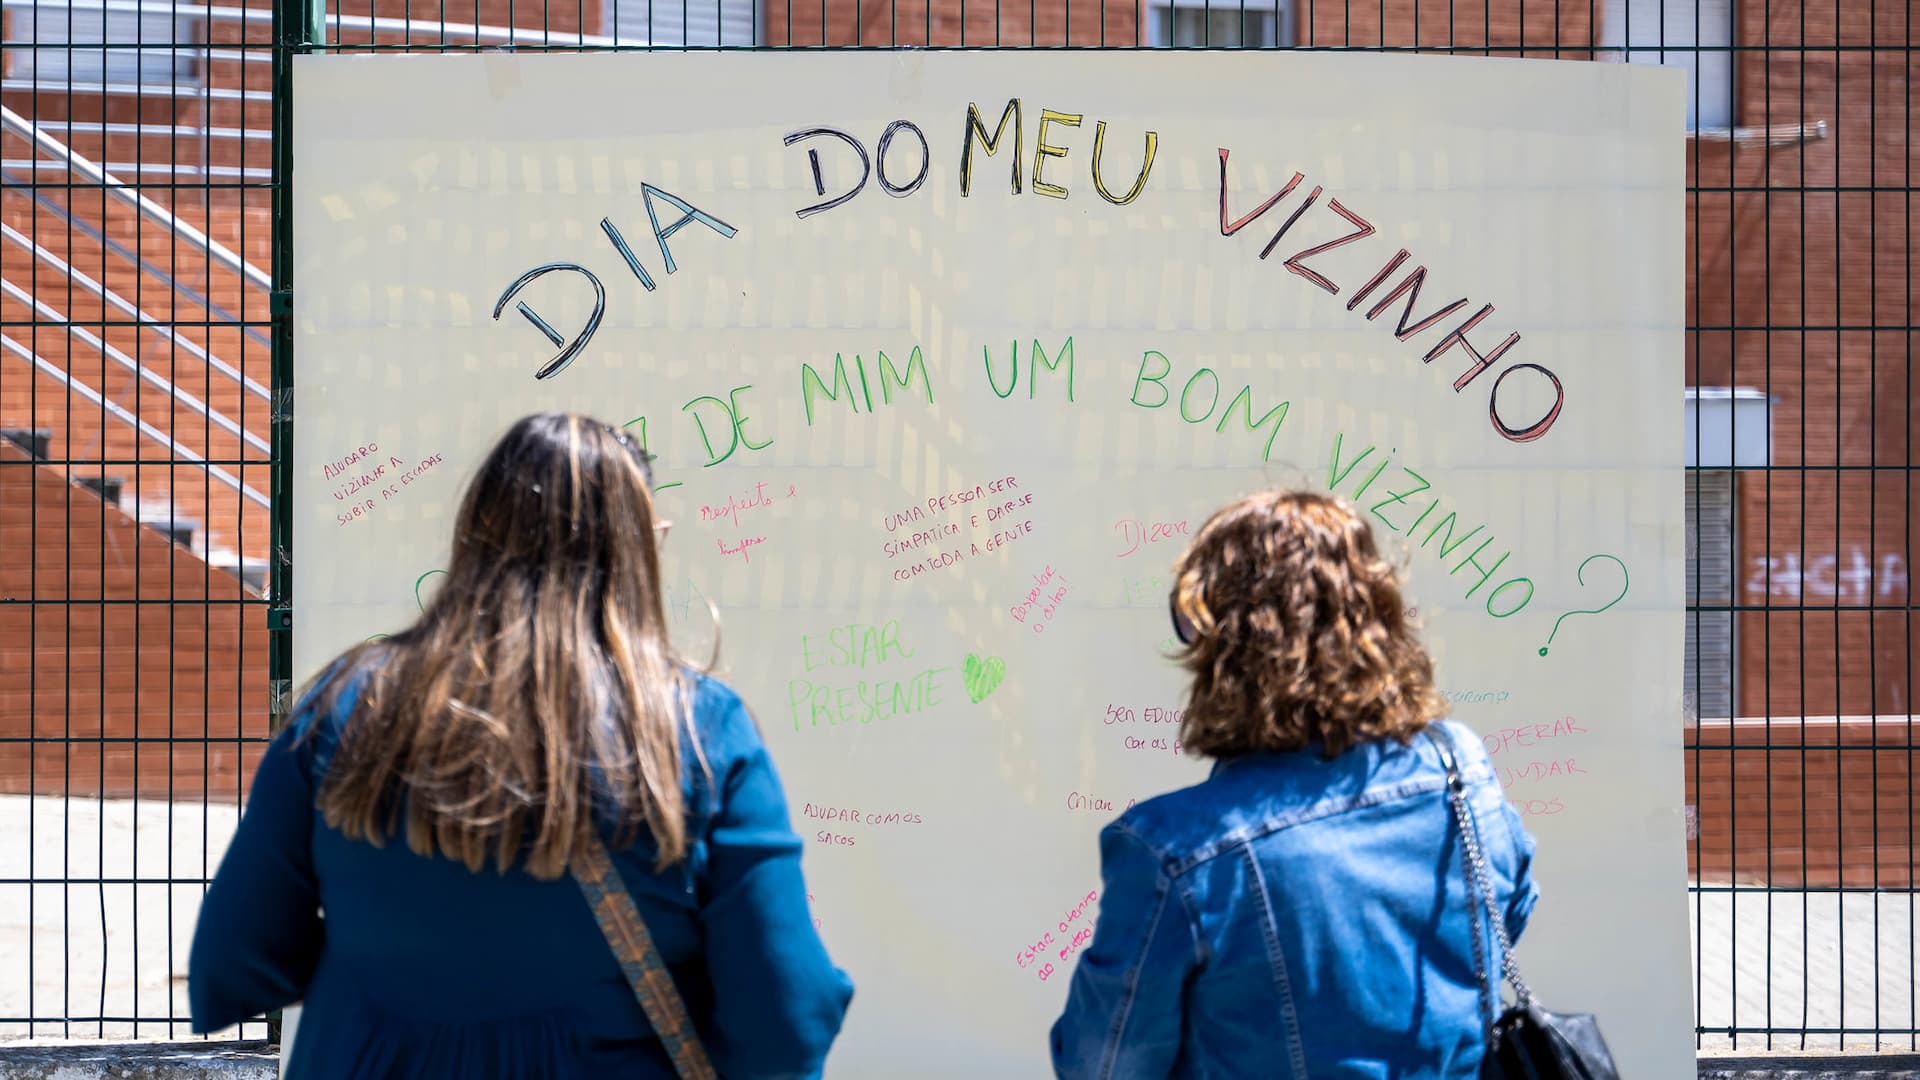 Cartaz em parede com a frase "Dia do meu vizinho"